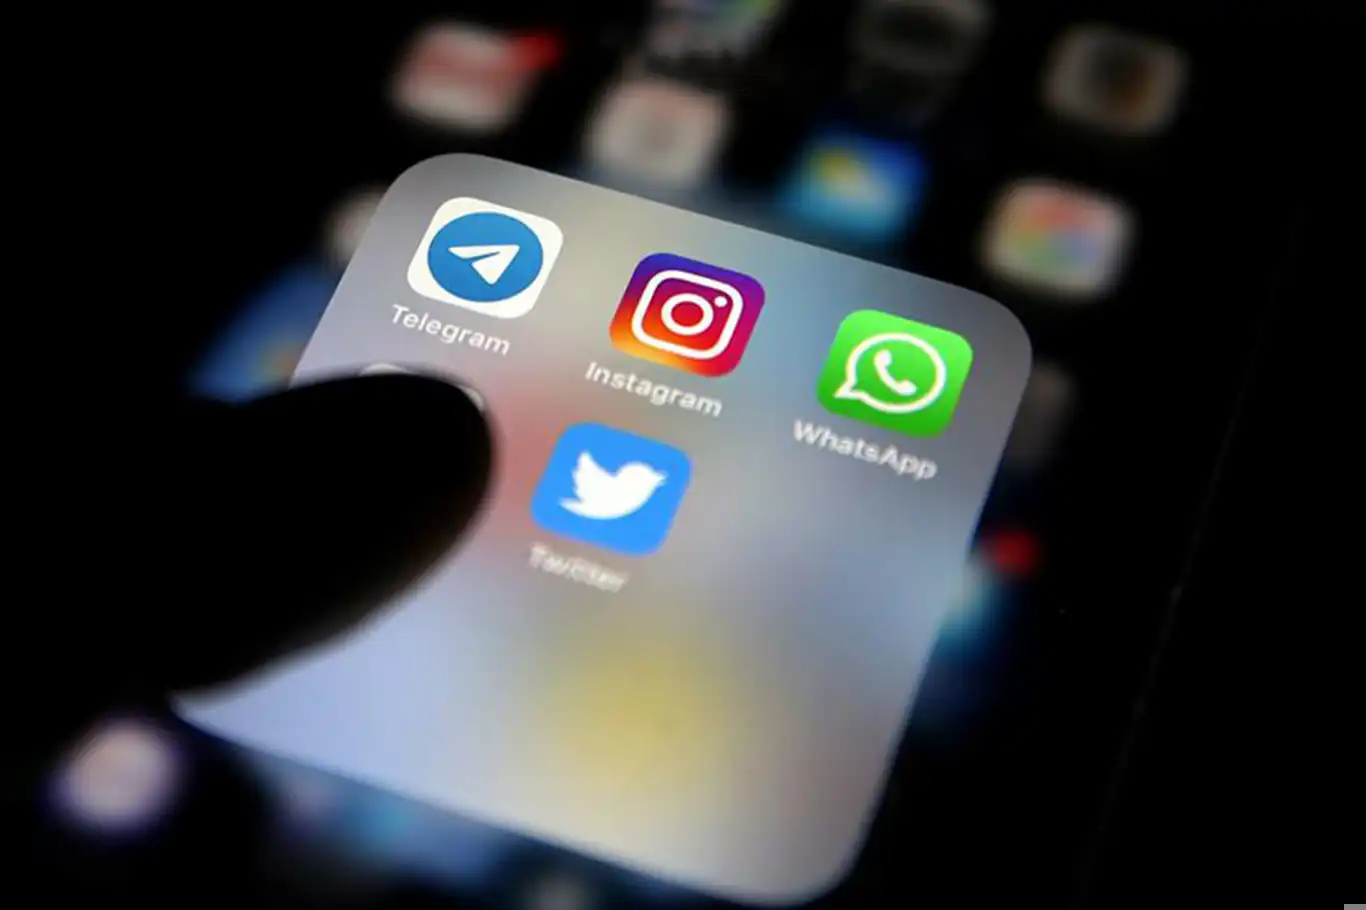 Hukukçular uyardı: Sosyal medya dolandırıcılığının acilen önüne geçilmeli